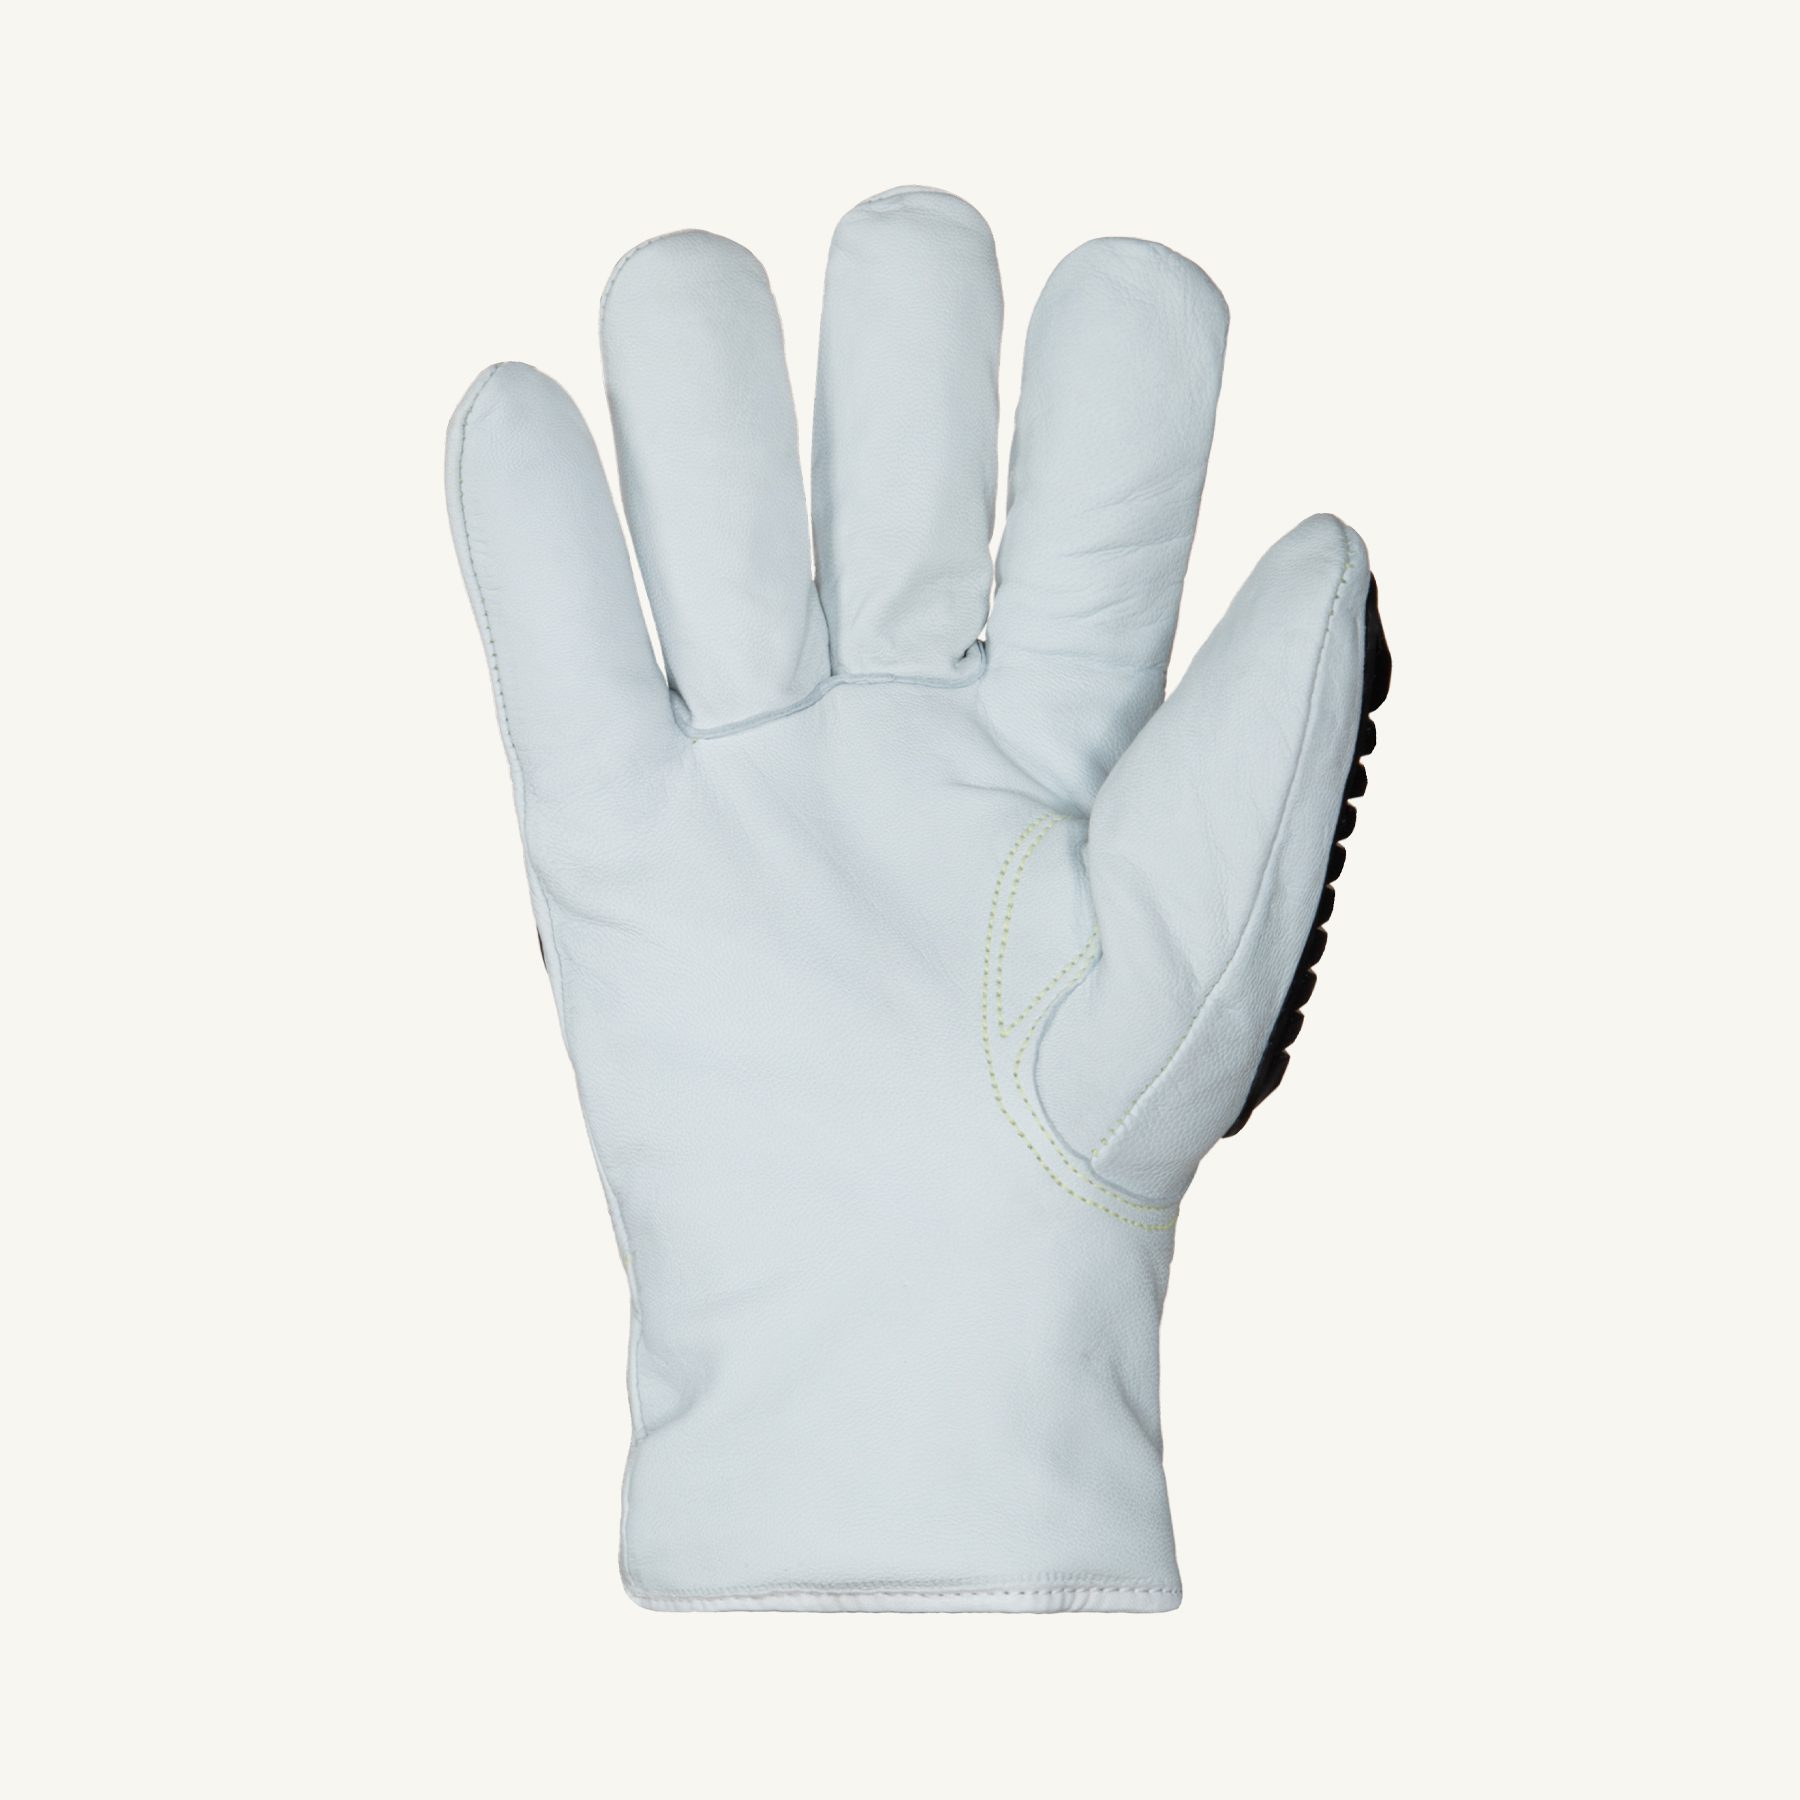 378TXTVBE Superior Glove® Endura® Thinsulate™ Impact A7 Winter Cut Gloves 